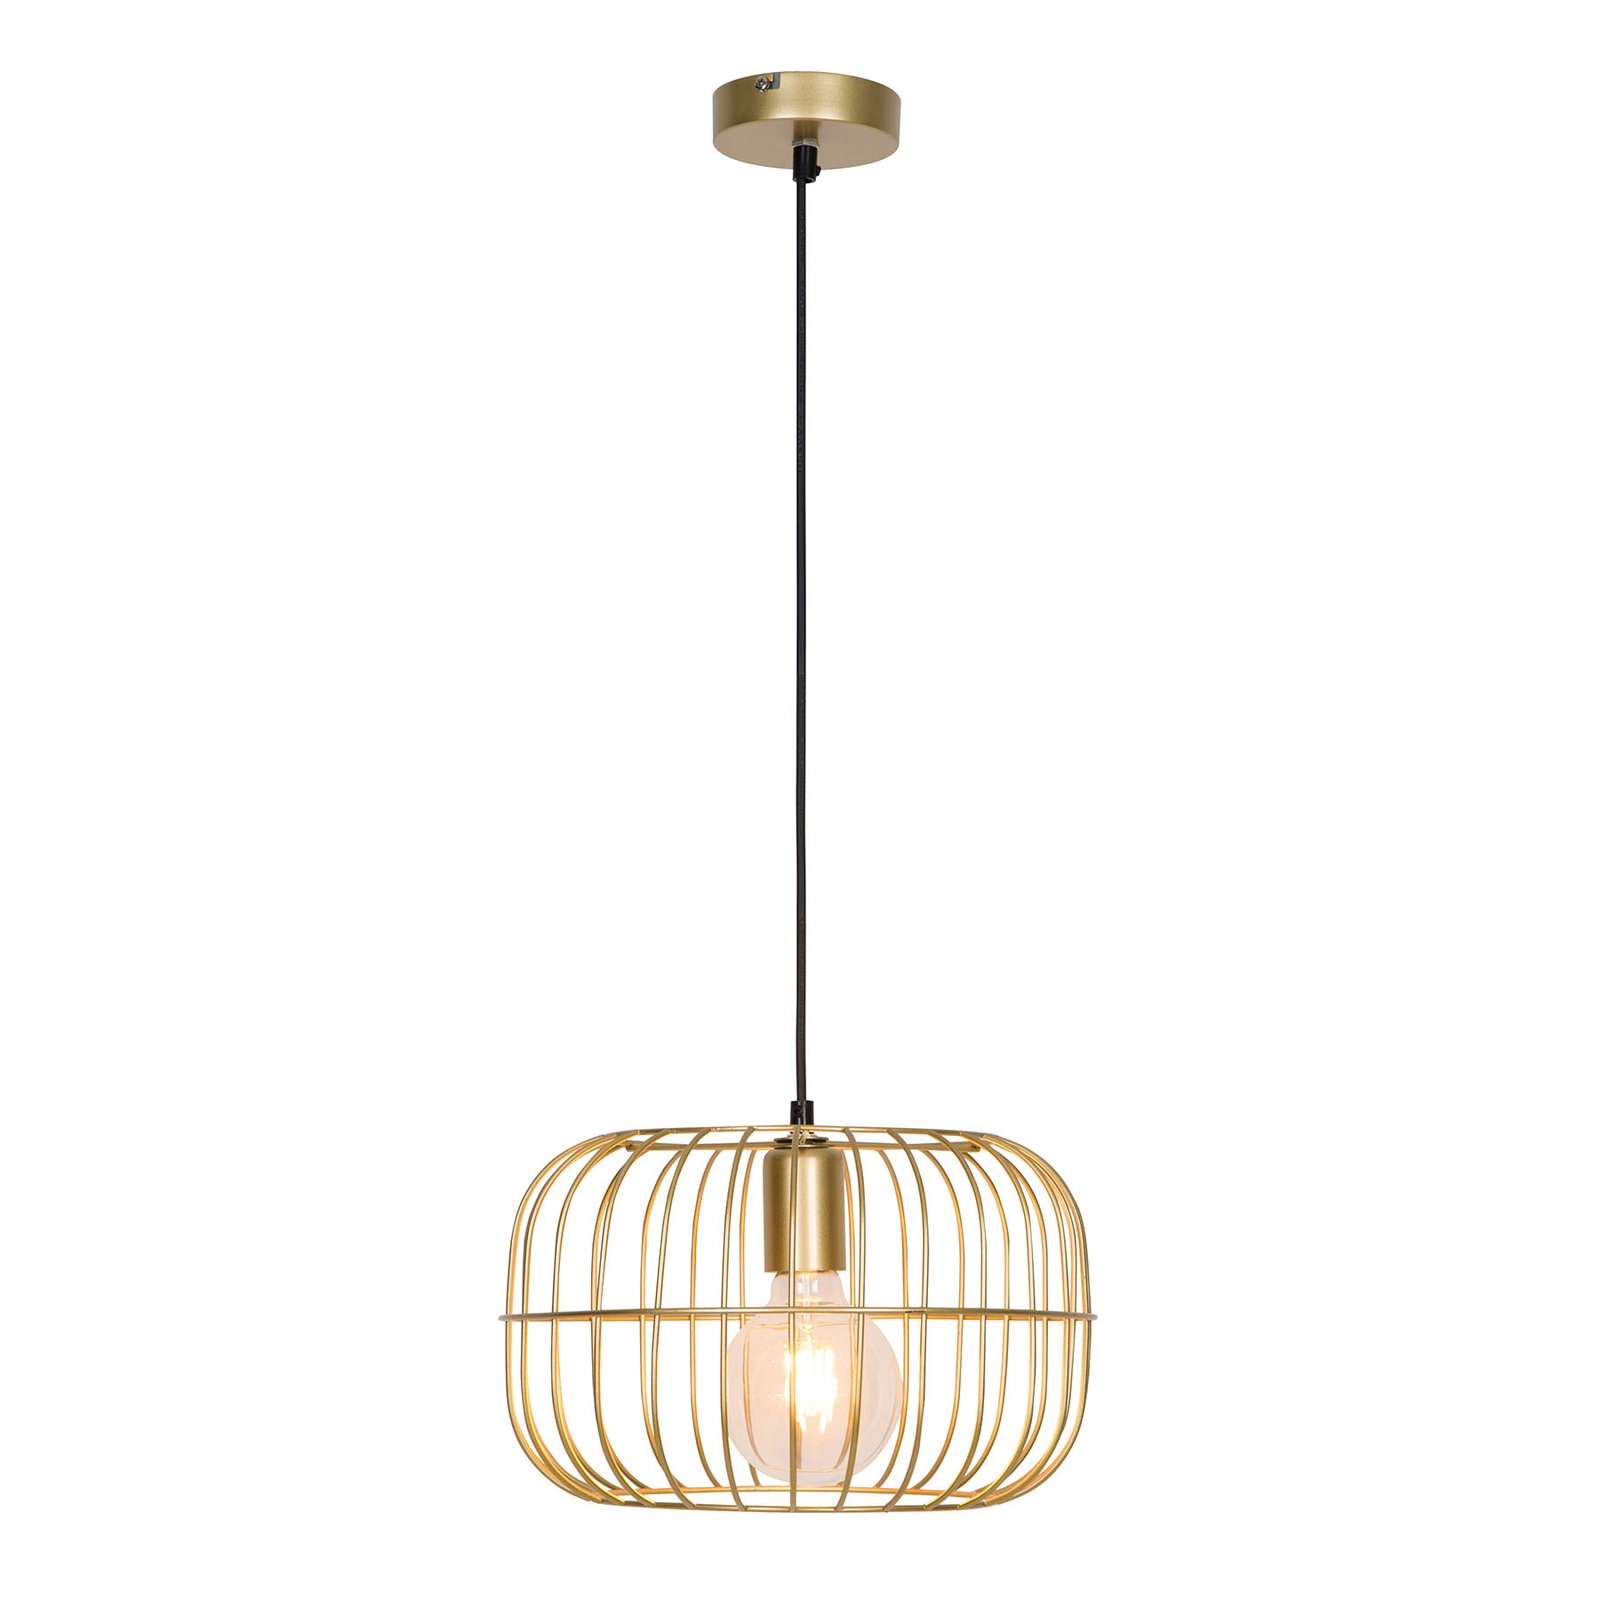 Hanglamp Zenith in kooivorm, goud